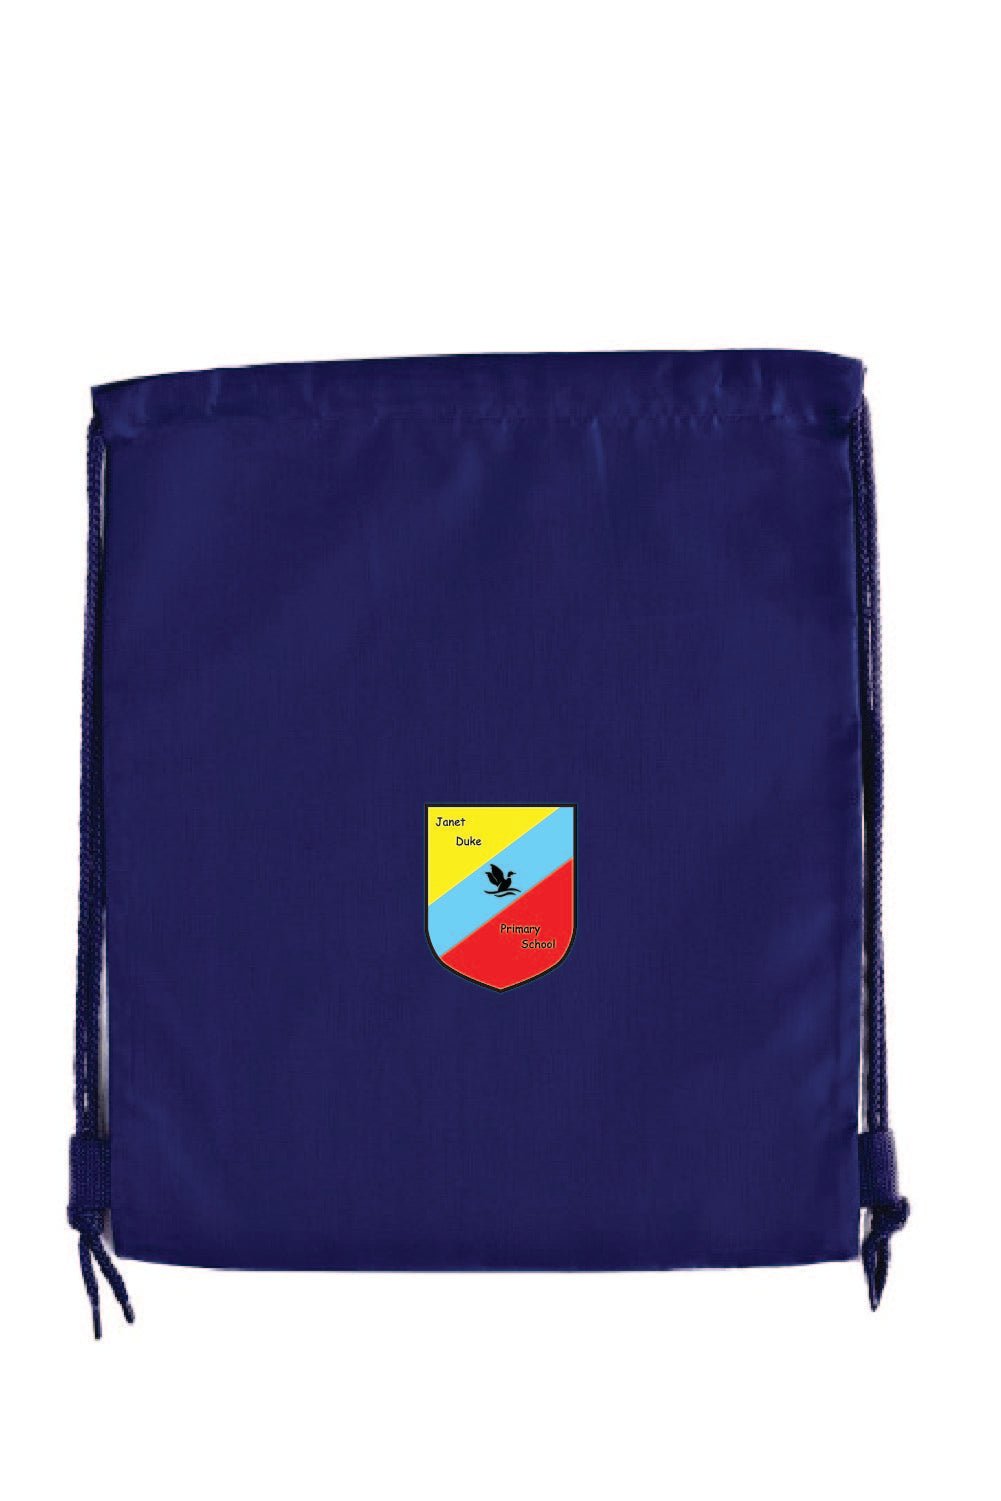 Janet Duke Personalised PE bag - Uniformwise Schoolwear